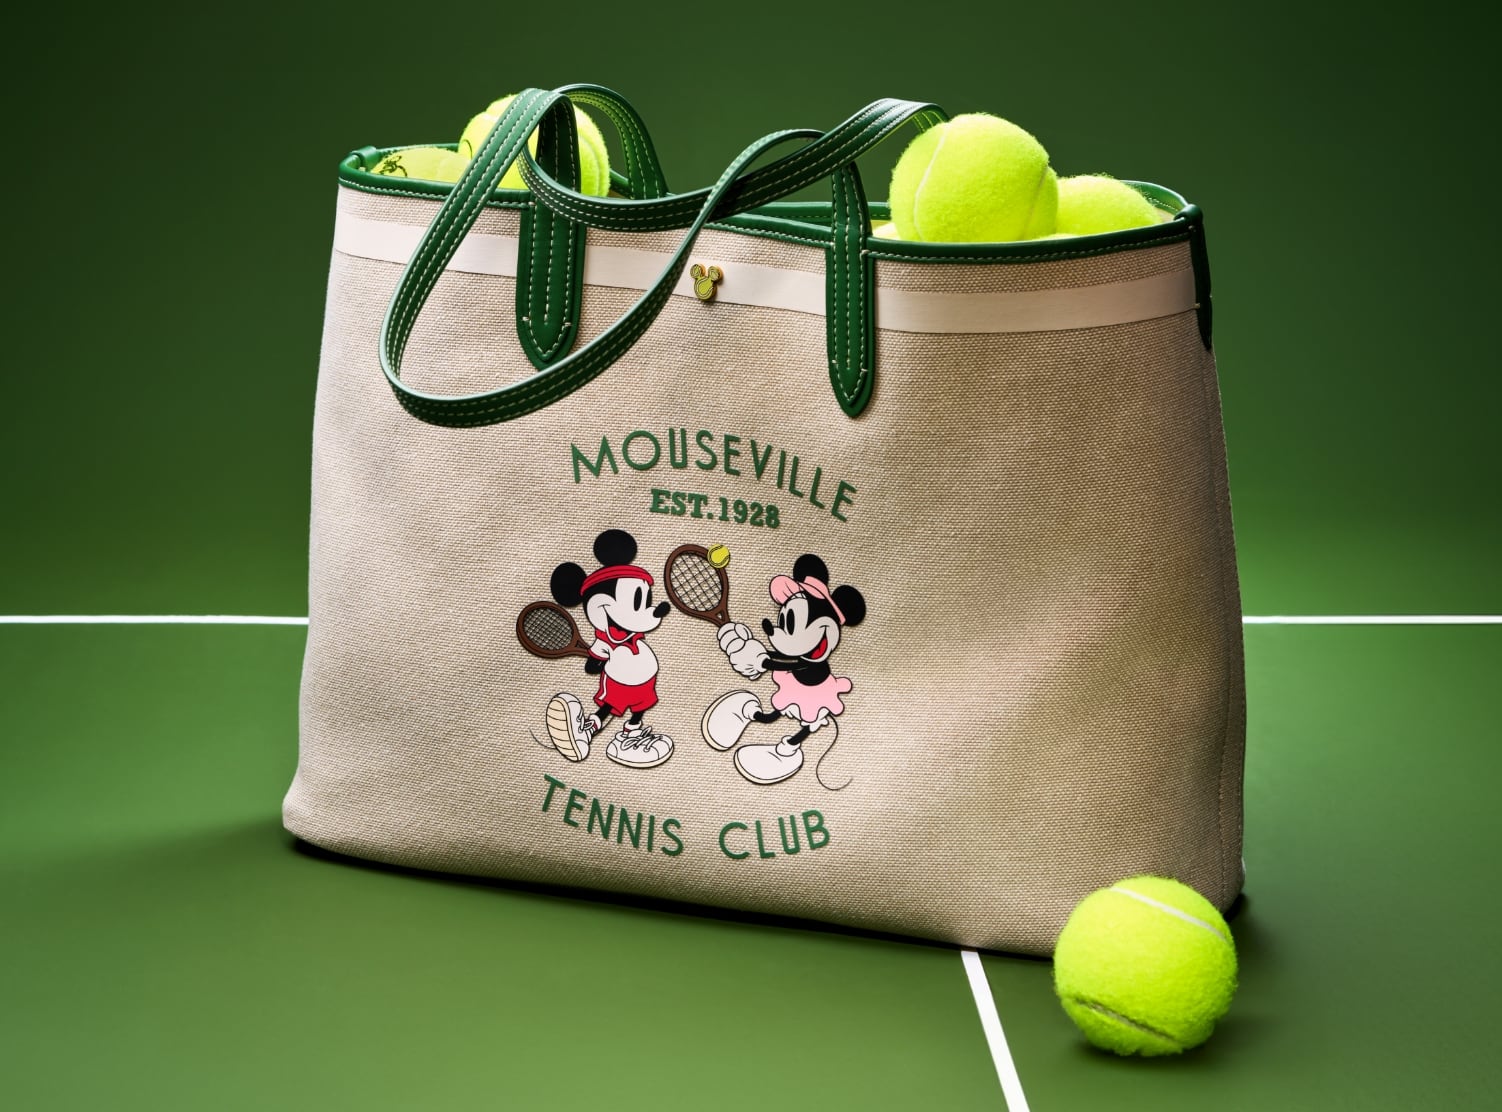 Eine Nahaufnahme unserer Special Edition Mini Crossbody-Handtasche aus grünem Leder mit runder Silhouette und Siebdruckgrafik von Micky und Minnie beim Tennis.